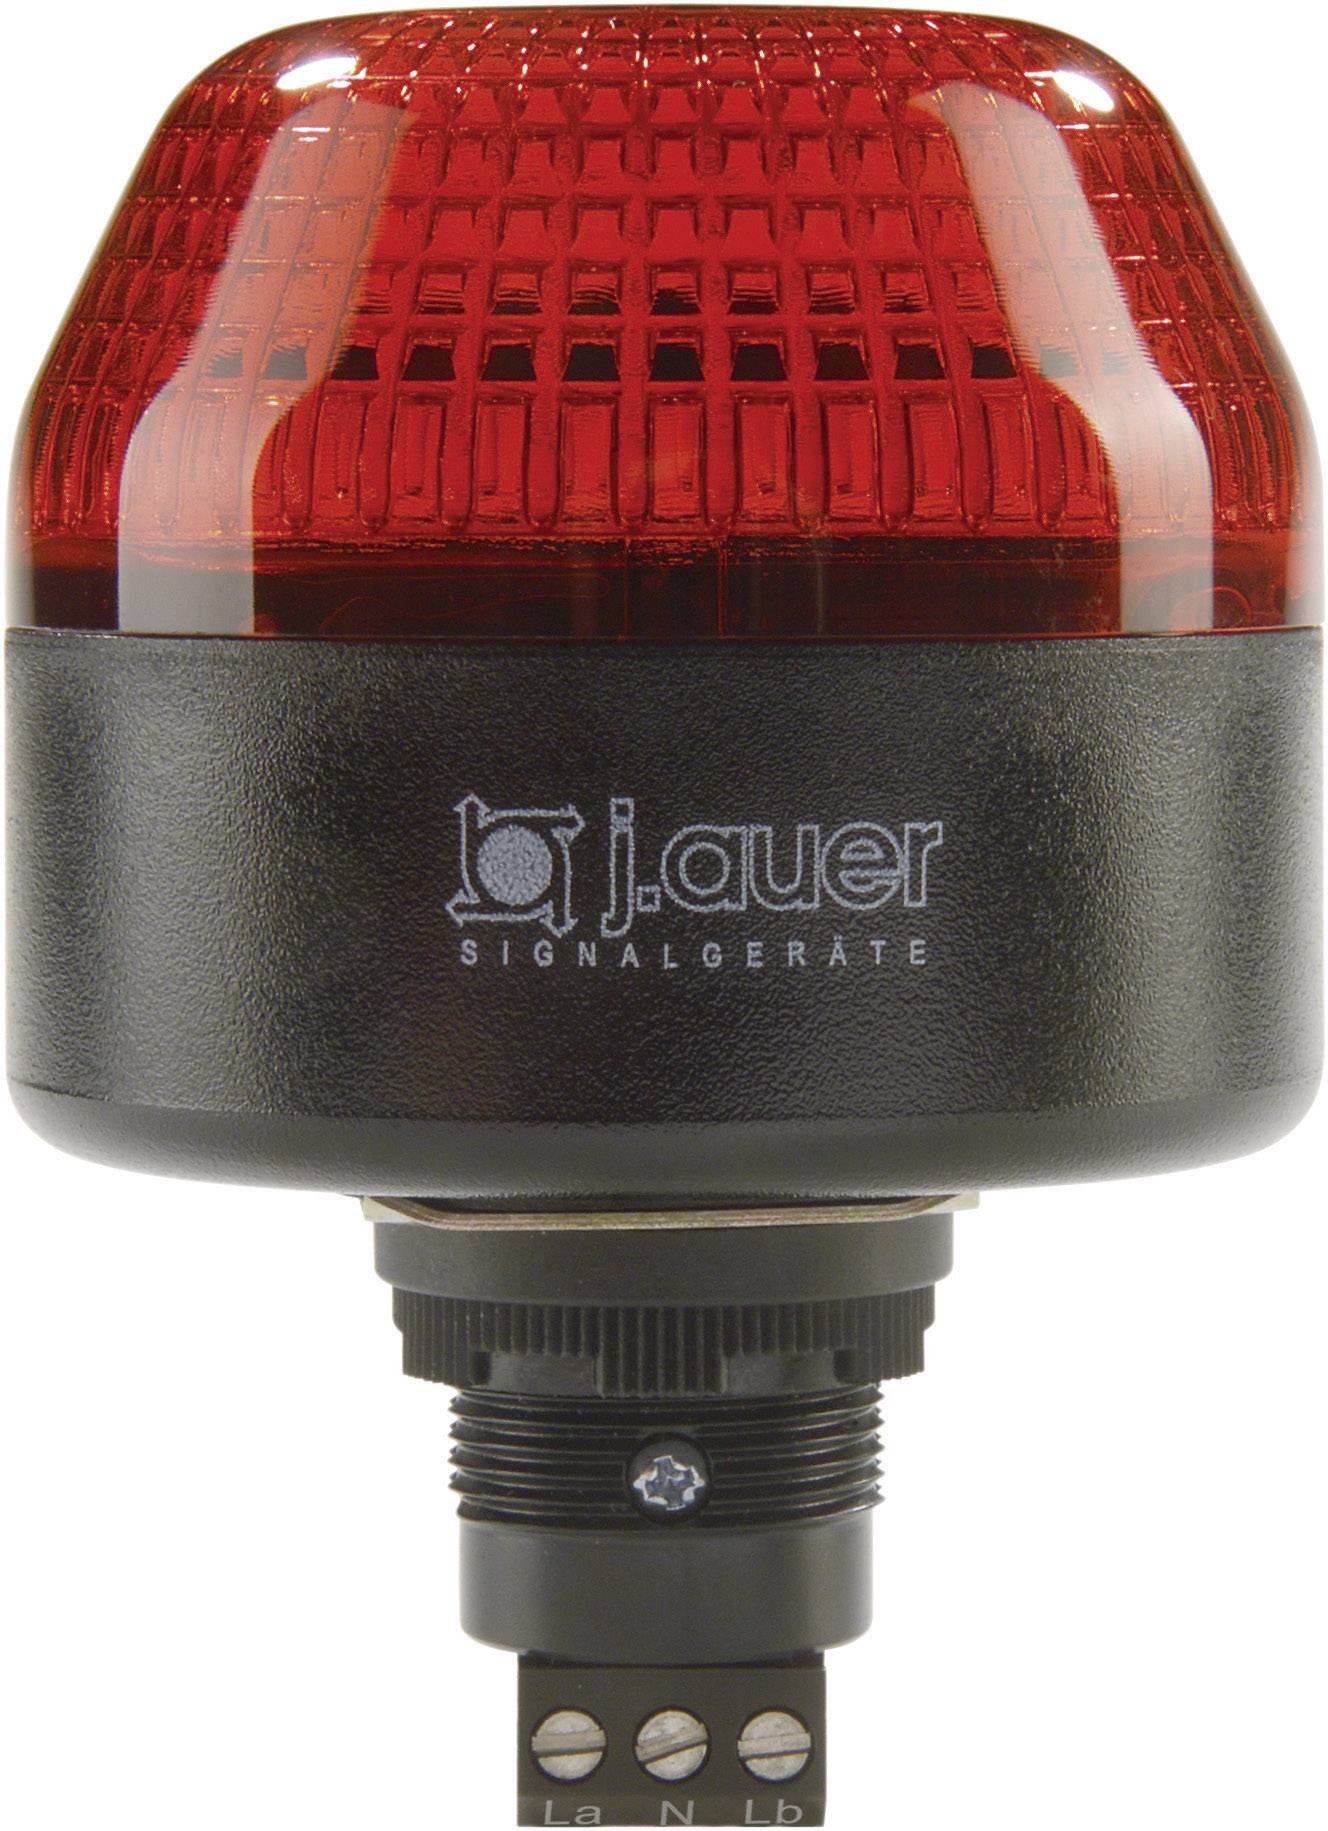 AUER SIGNAL Signalleuchte LED Auer Signalgeräte IBL Rot Dauerlicht, Blinklicht 24 V/DC, 24 V/AC